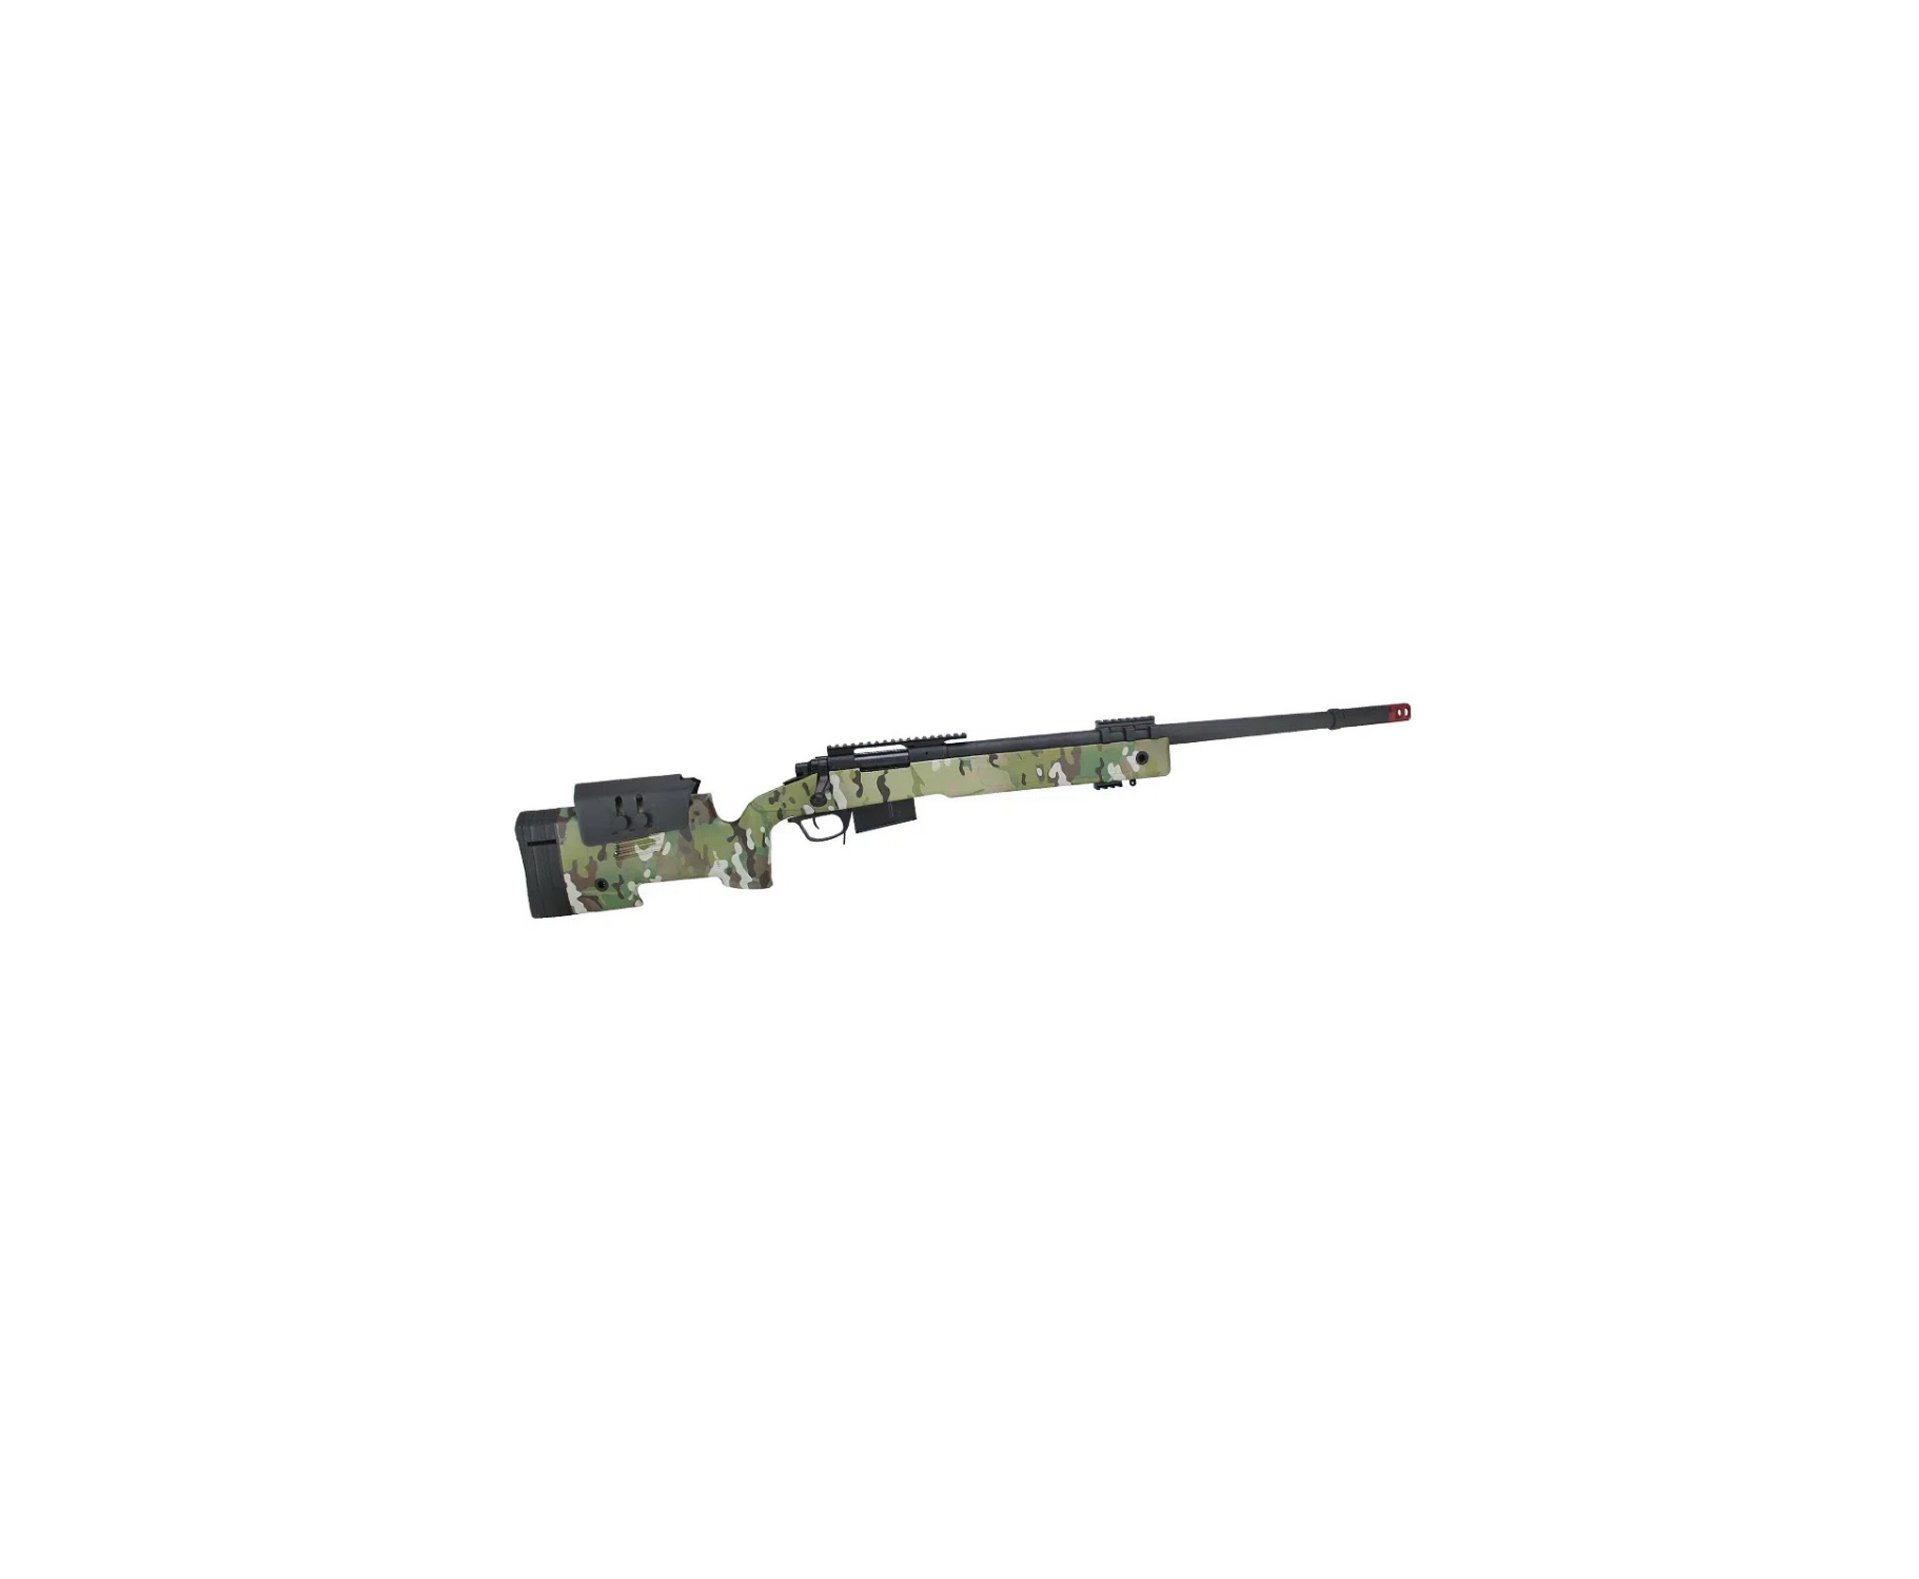 Rifle de Airsoft Sniper M40 A5 VSR10 SA-S03 Core S-Series Multicam - Specna Arms + Luneta 4x32 + BBs + Óleo de Silicone + Alvos